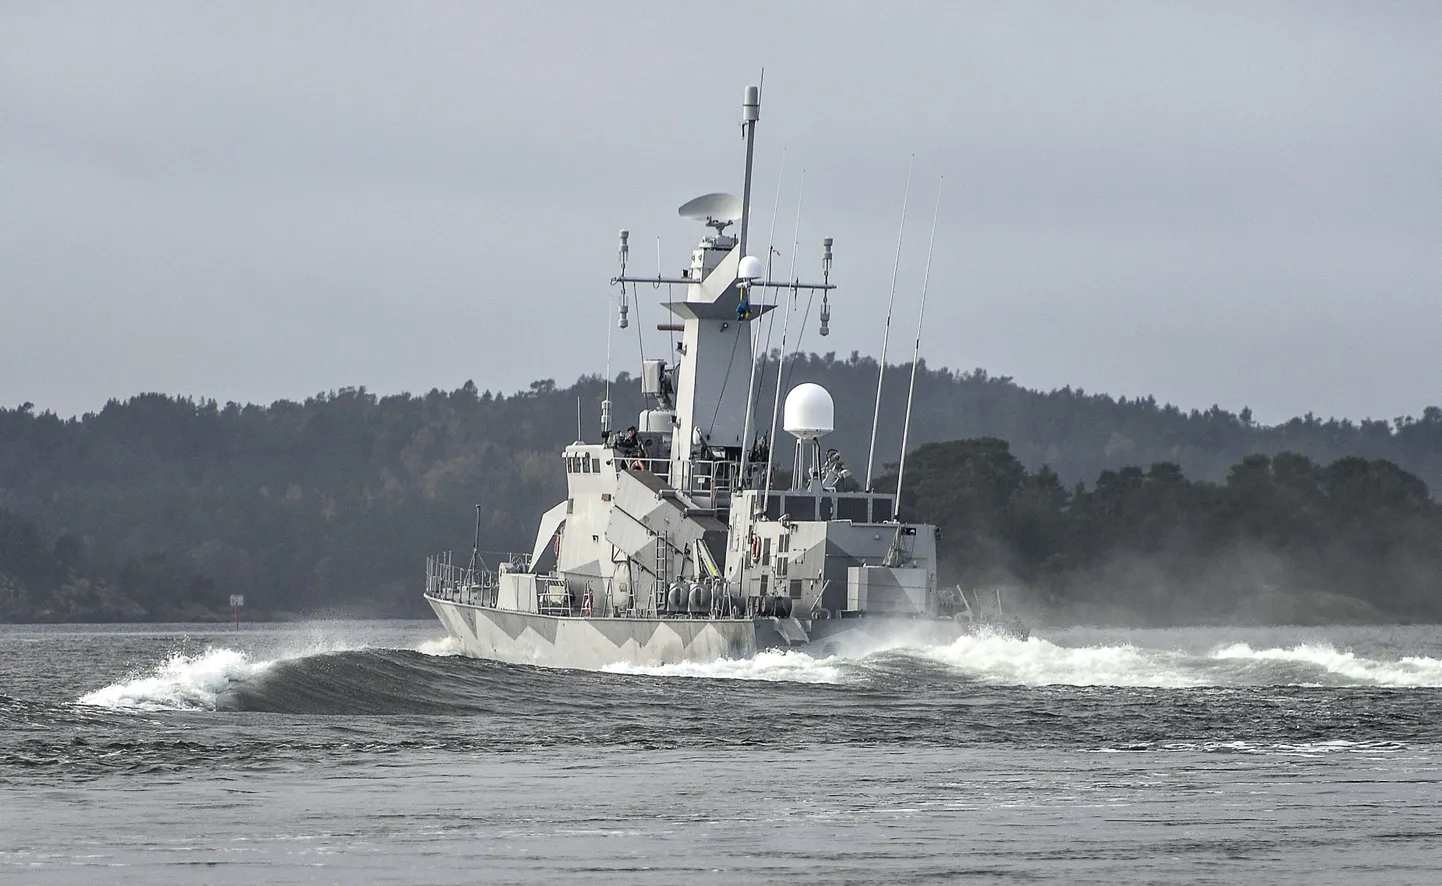 Rootsi mereväe korvett HMS Stockholm on üks, mis otsib koos teiste laevadega võõrast veealust objekti Stockholmi saarestikust.